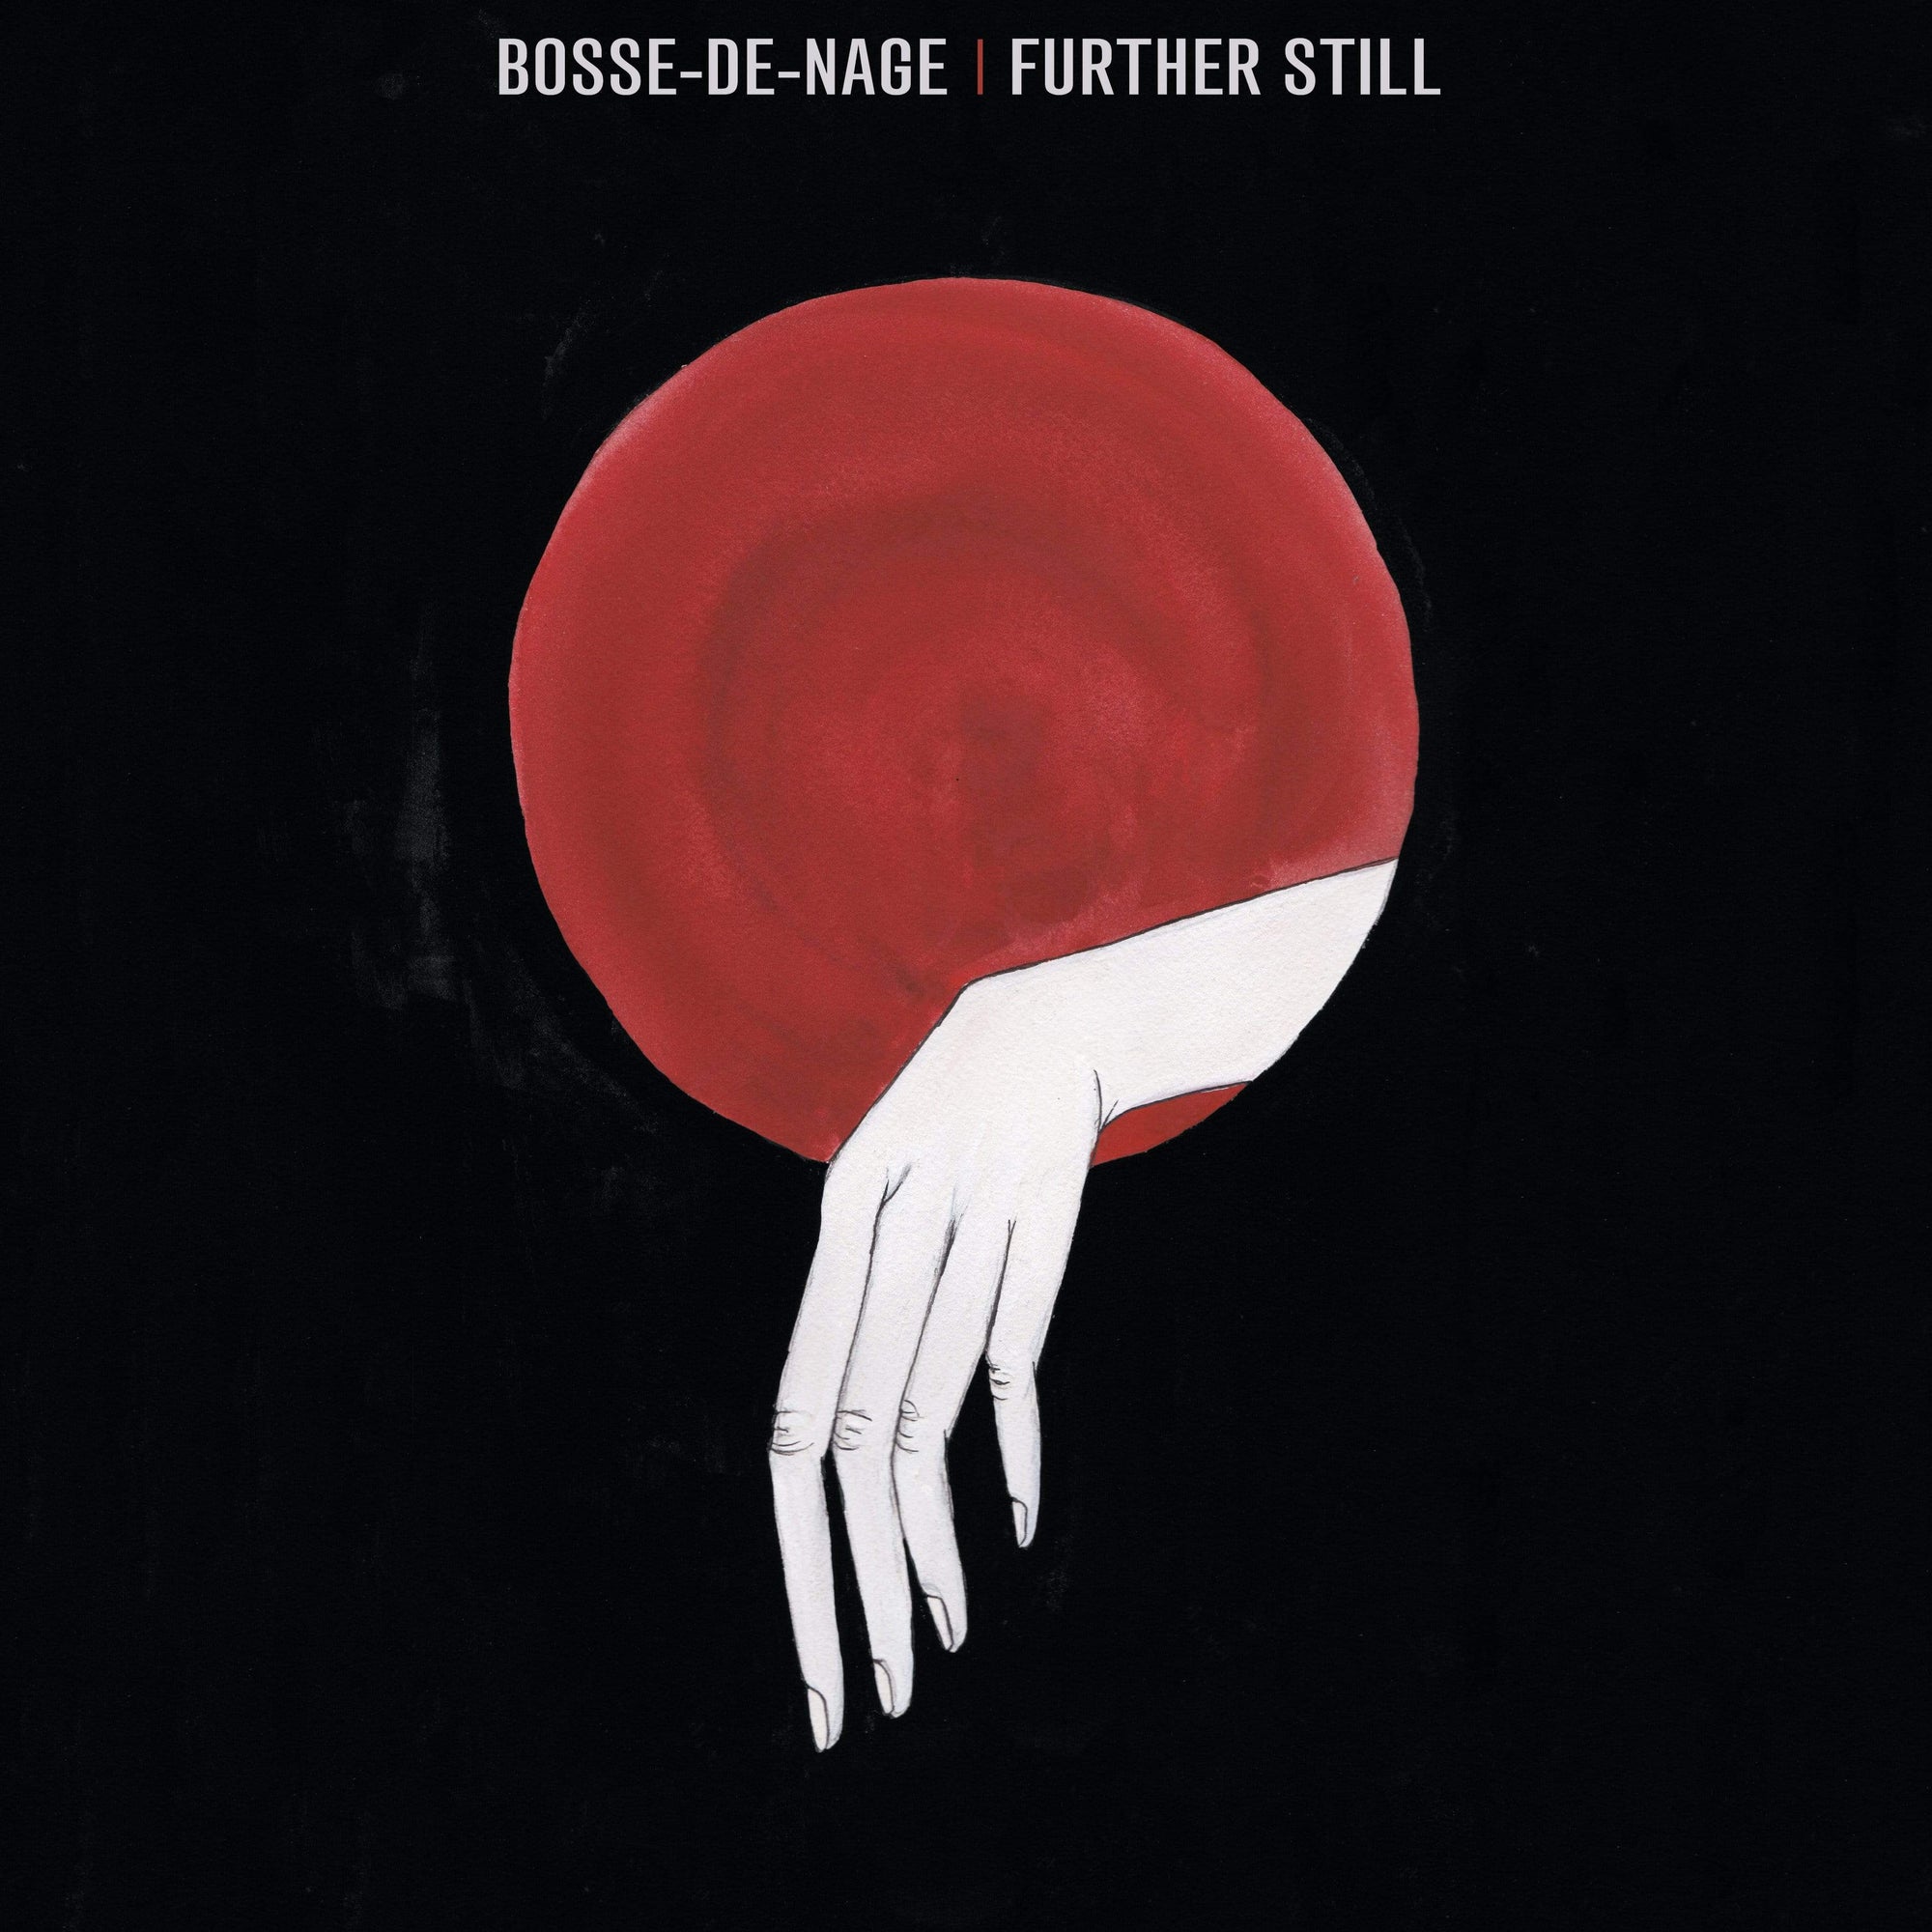 The Flenser CD Bosse-de-Nage "Further Still" CD